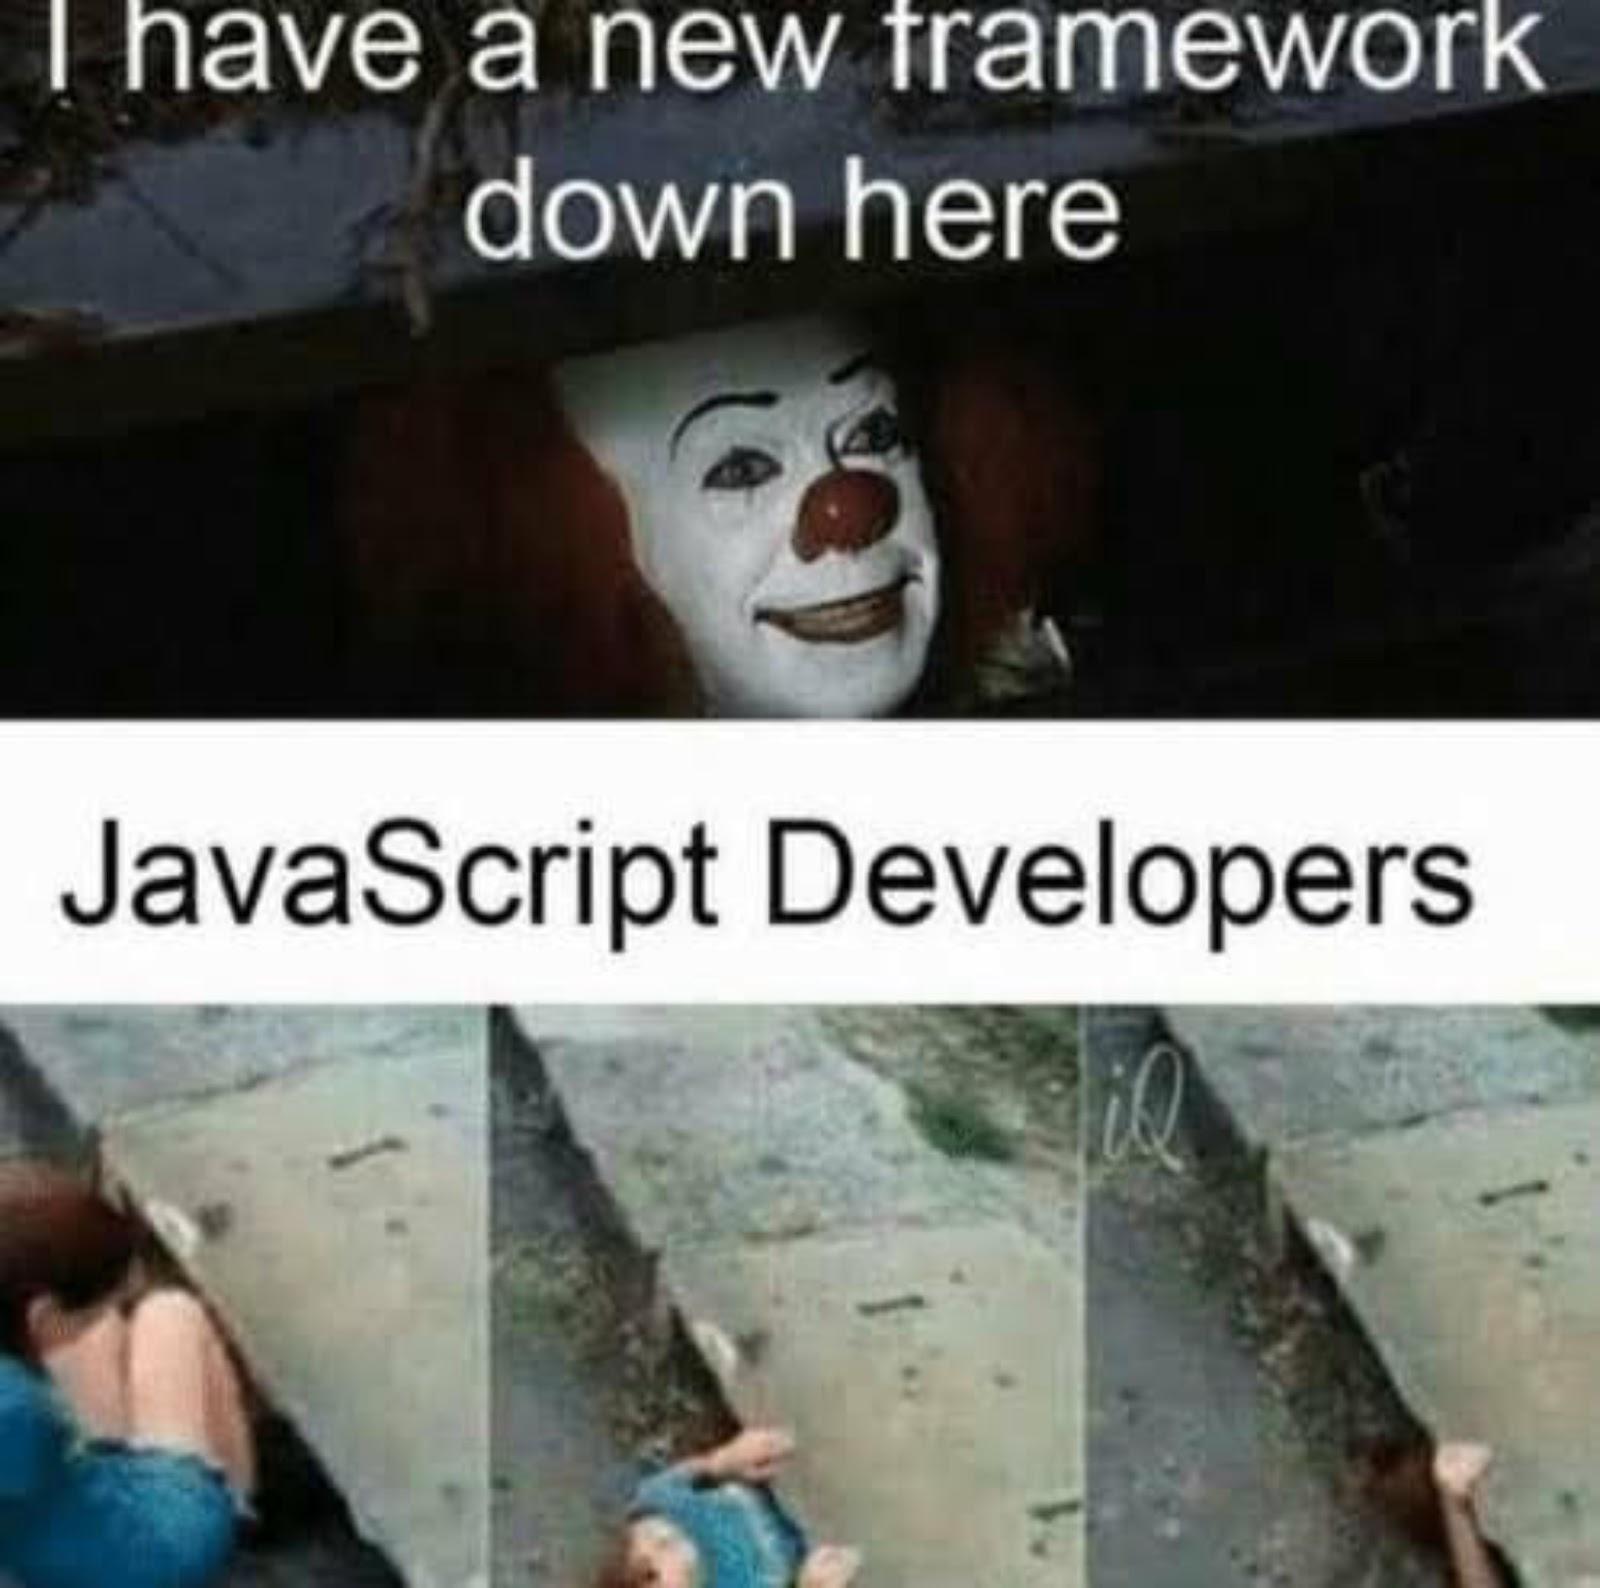 Javascript developers and frameworks